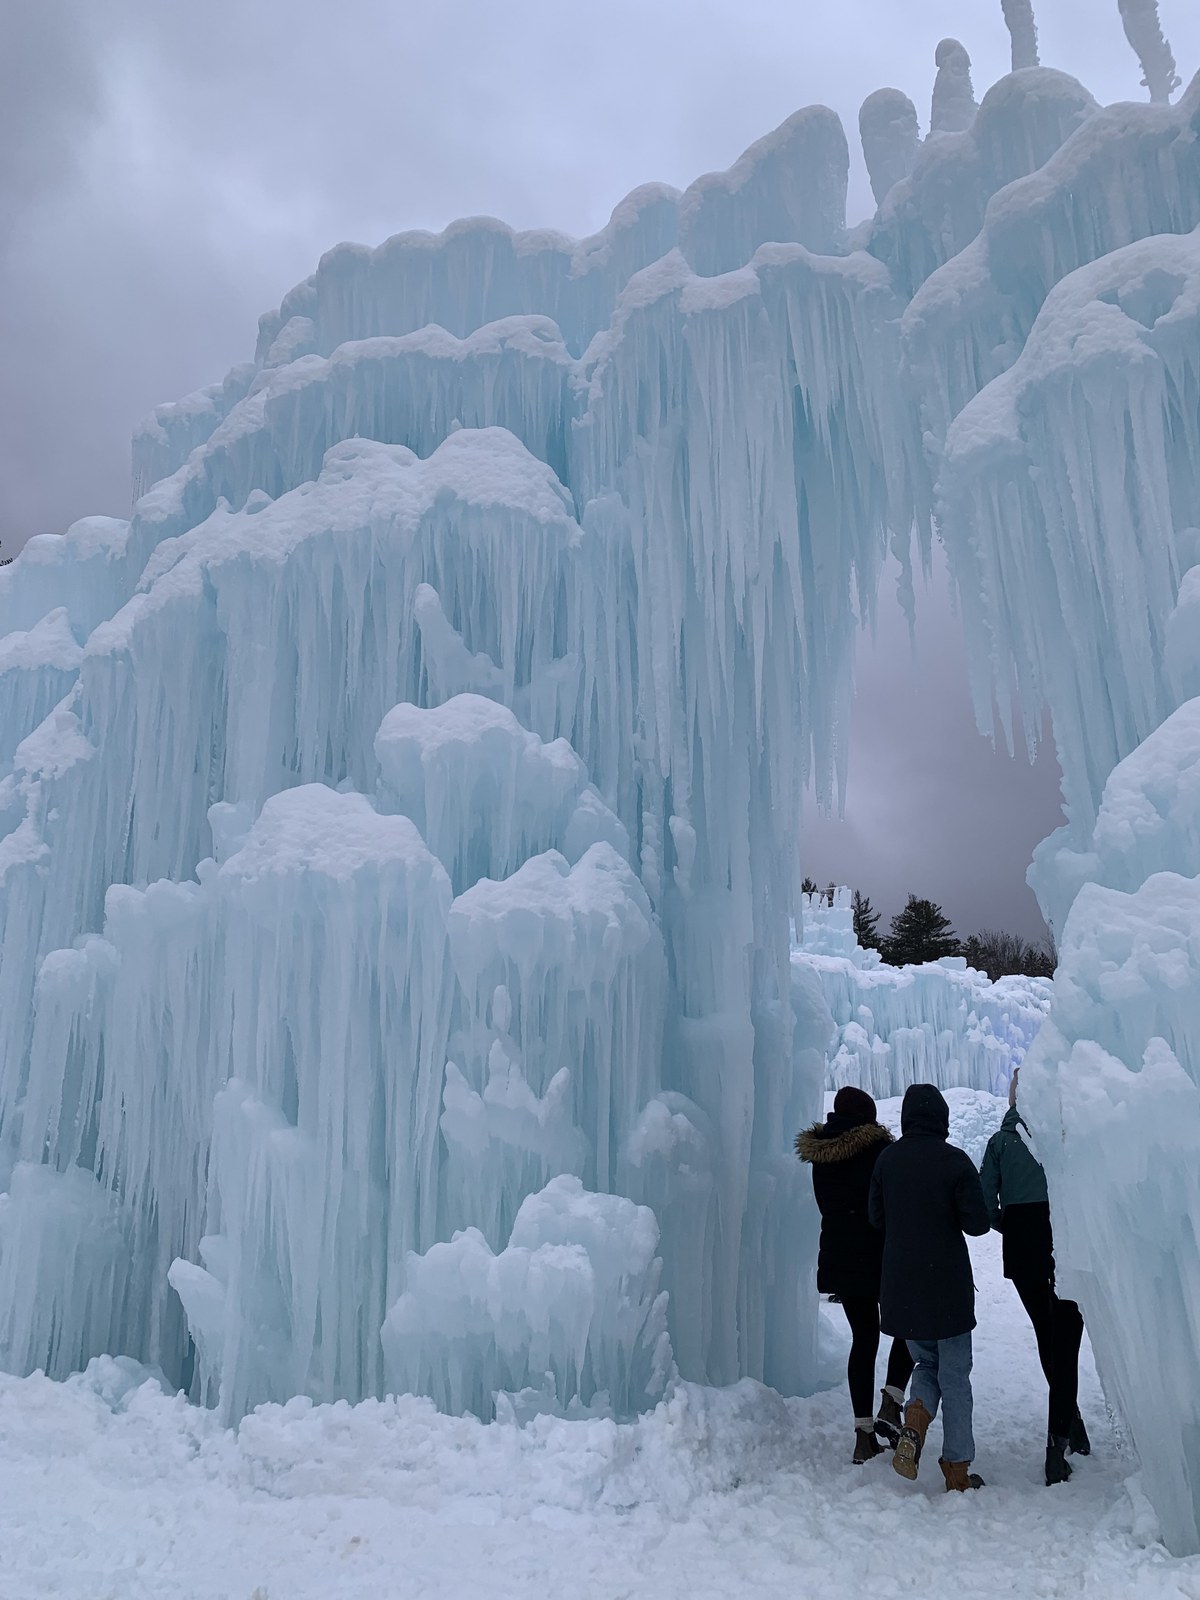 Castillos de hielo NH: 11 consejos para visitar - 13